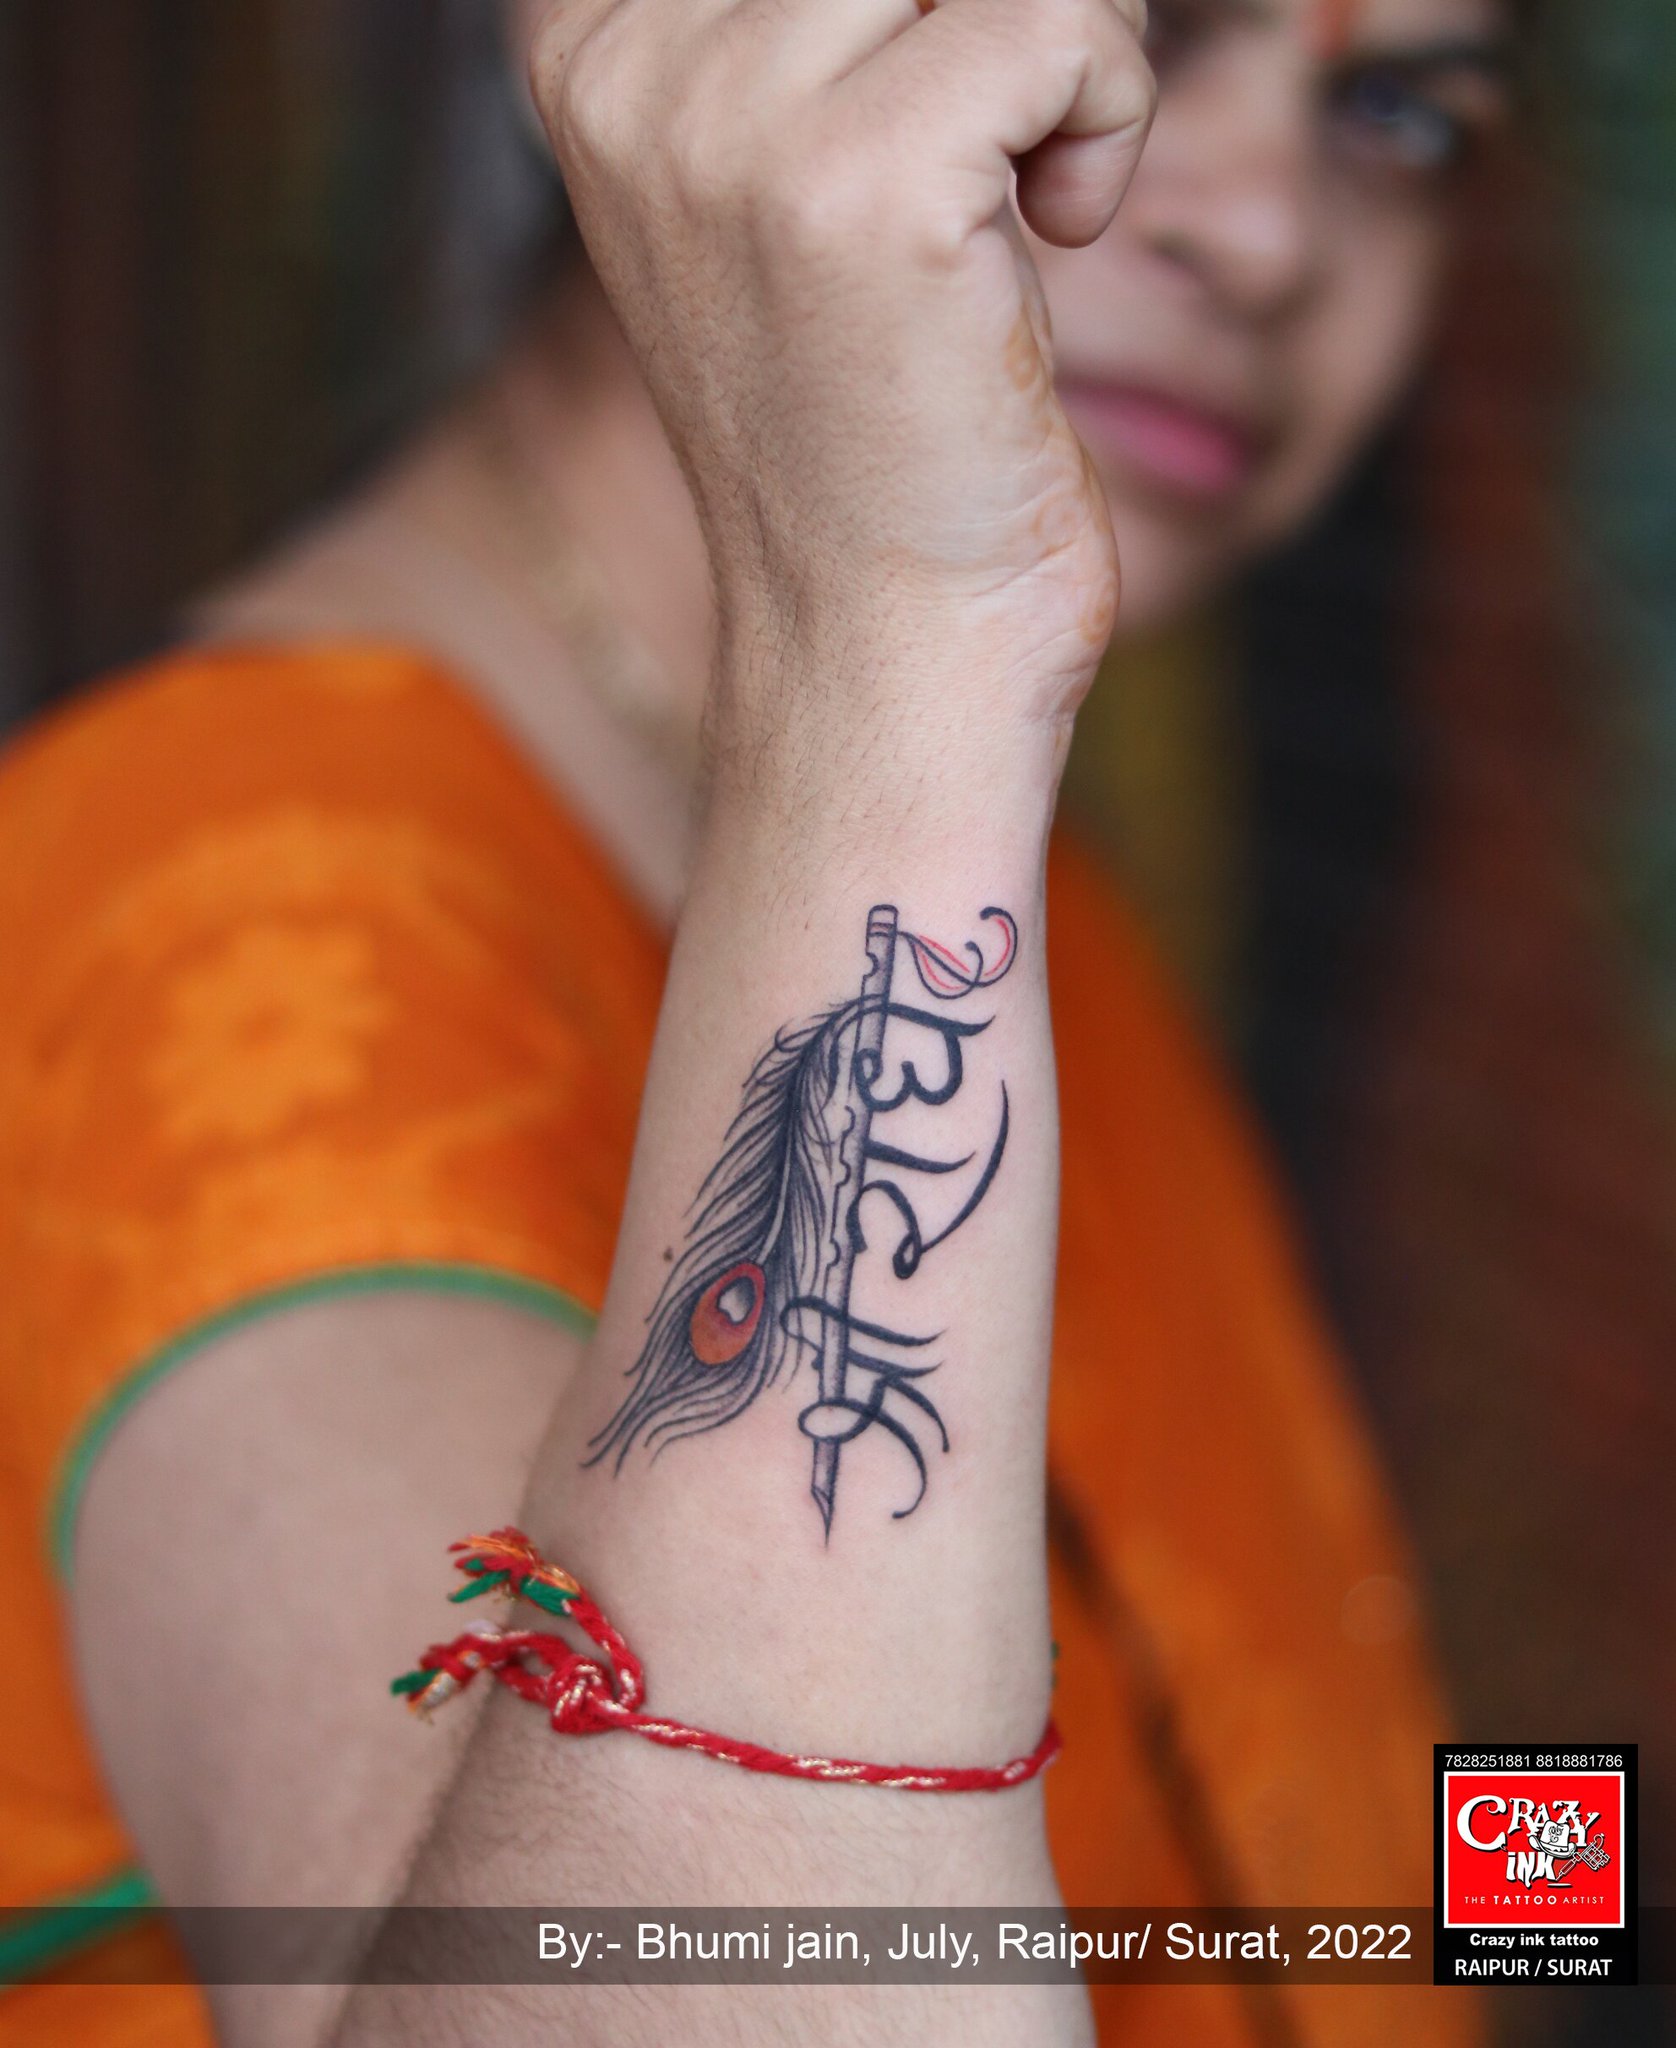 Share more than 143 shri radhe tattoo